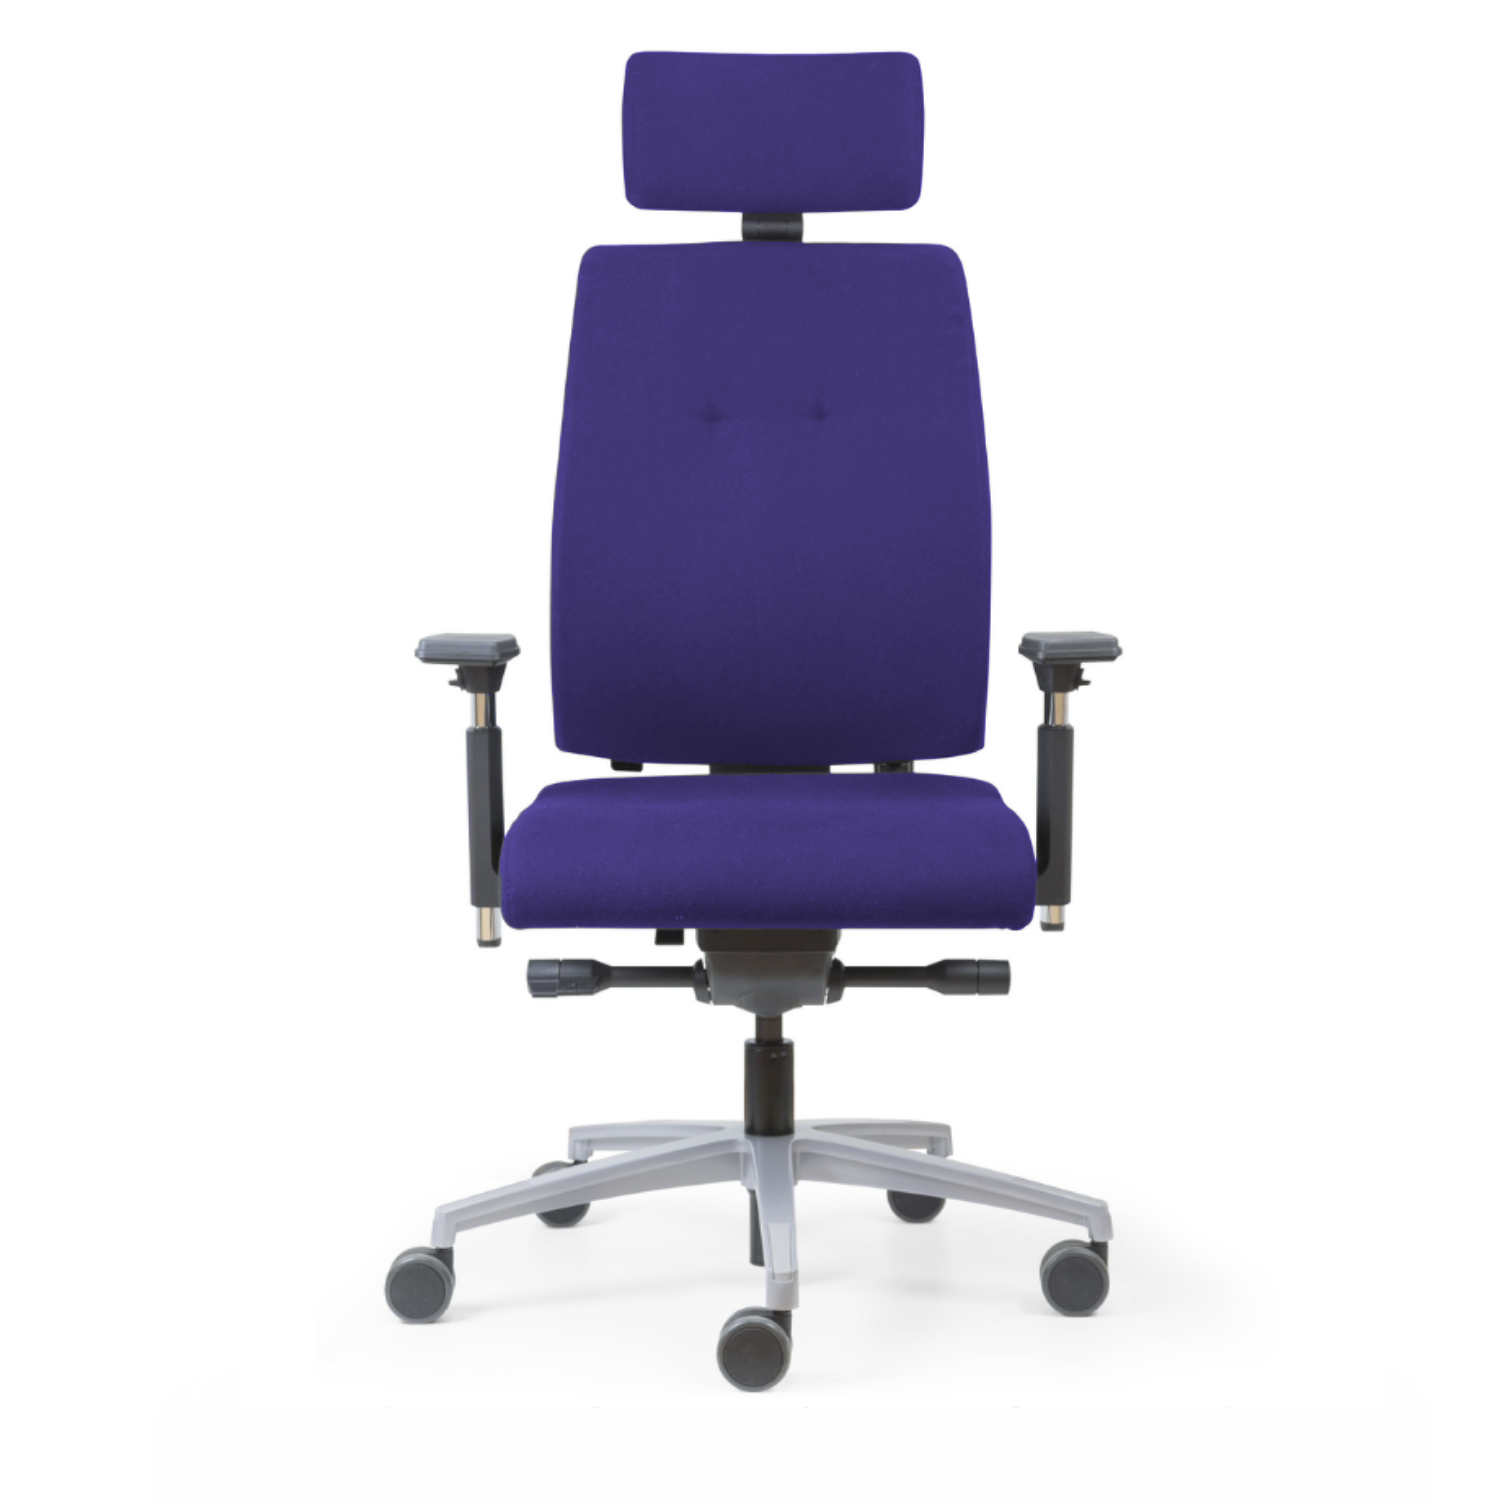 Fauteuil ergo usage intensif pour 24heures 24/24 - fauteuil surveillance ergonomique, csu, centre contrôle